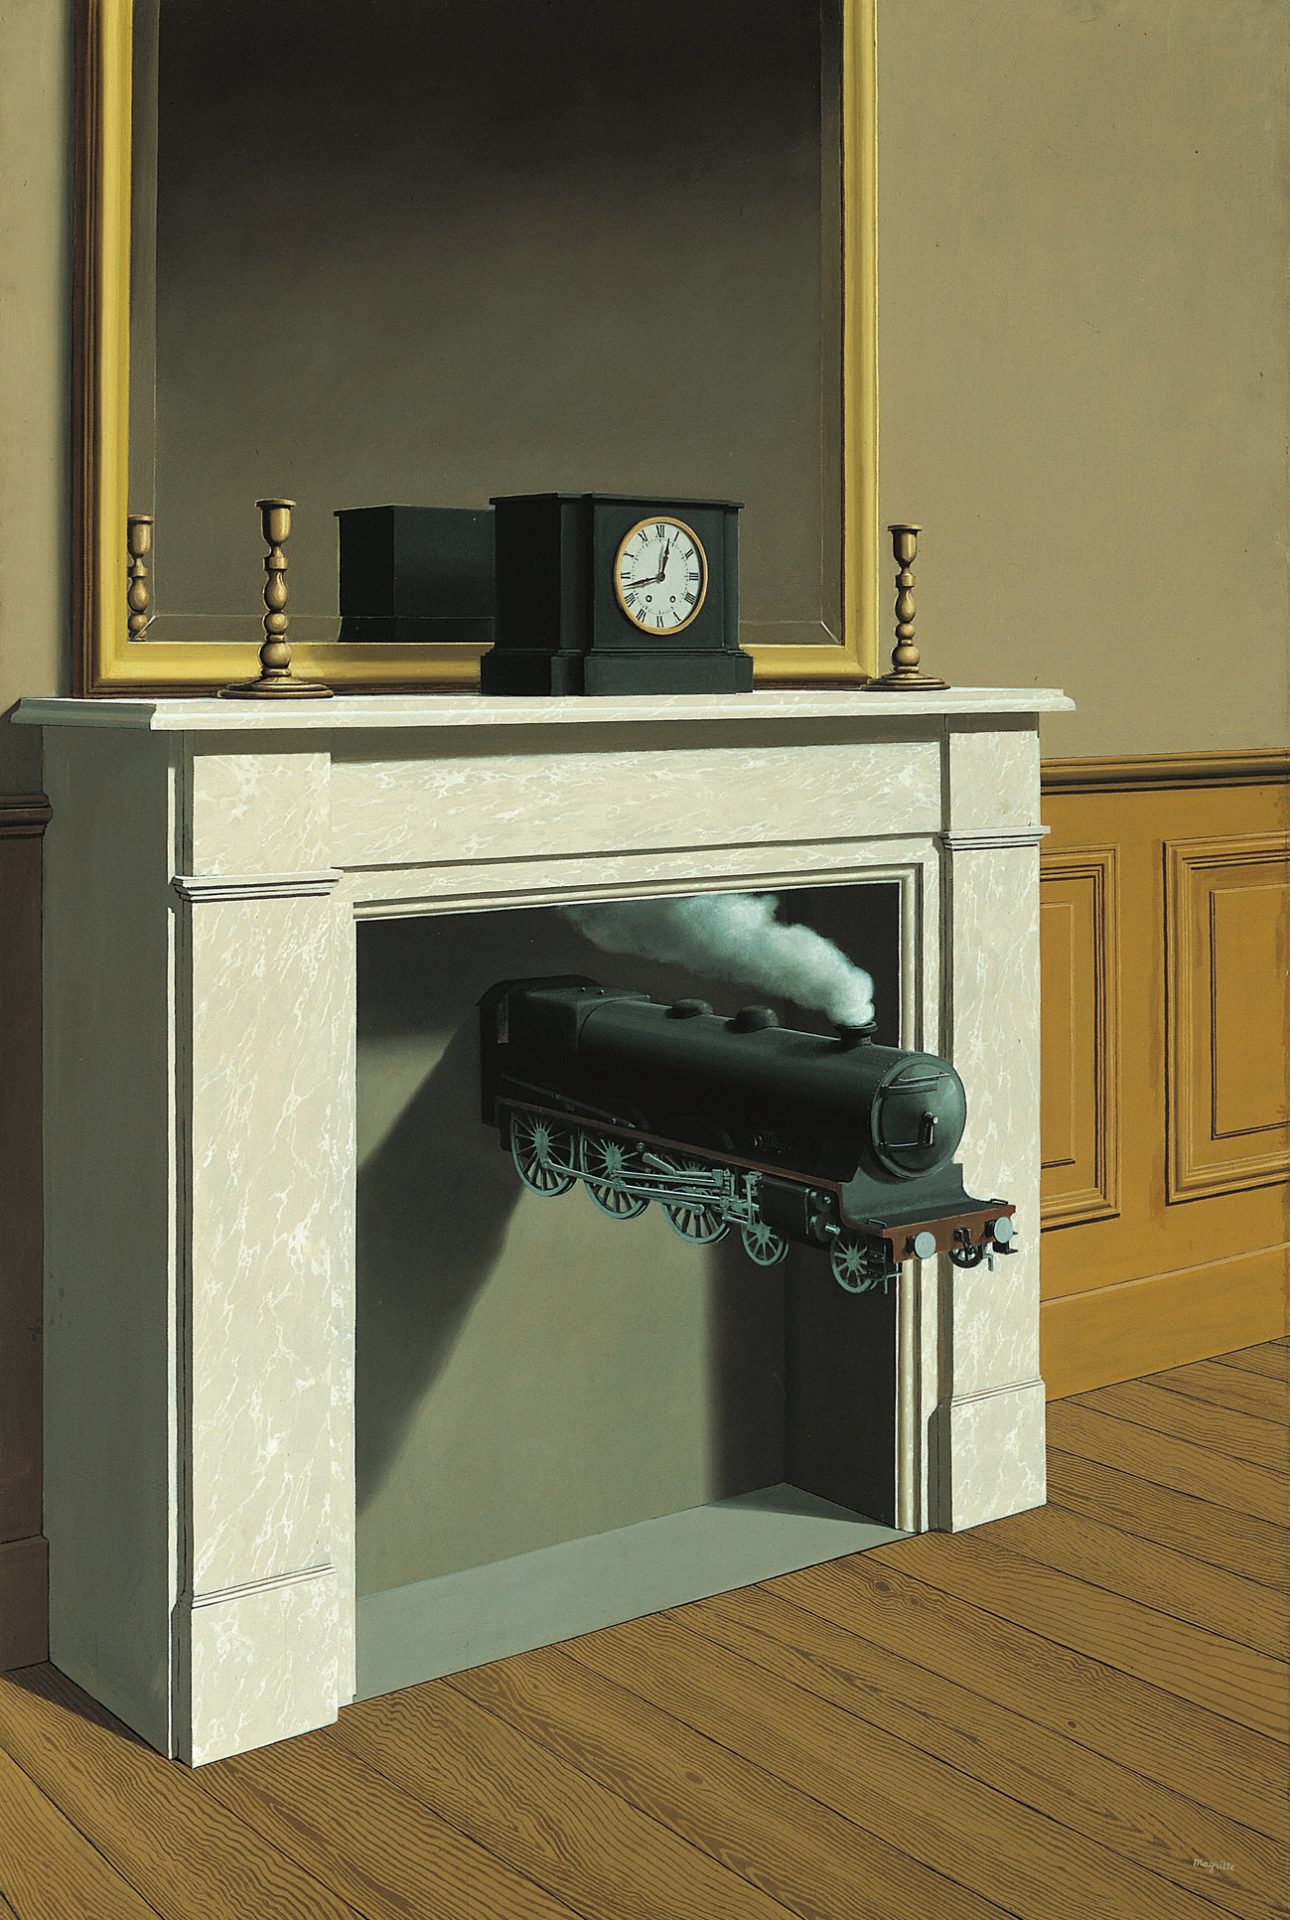 Magritte, La Durée poignardée